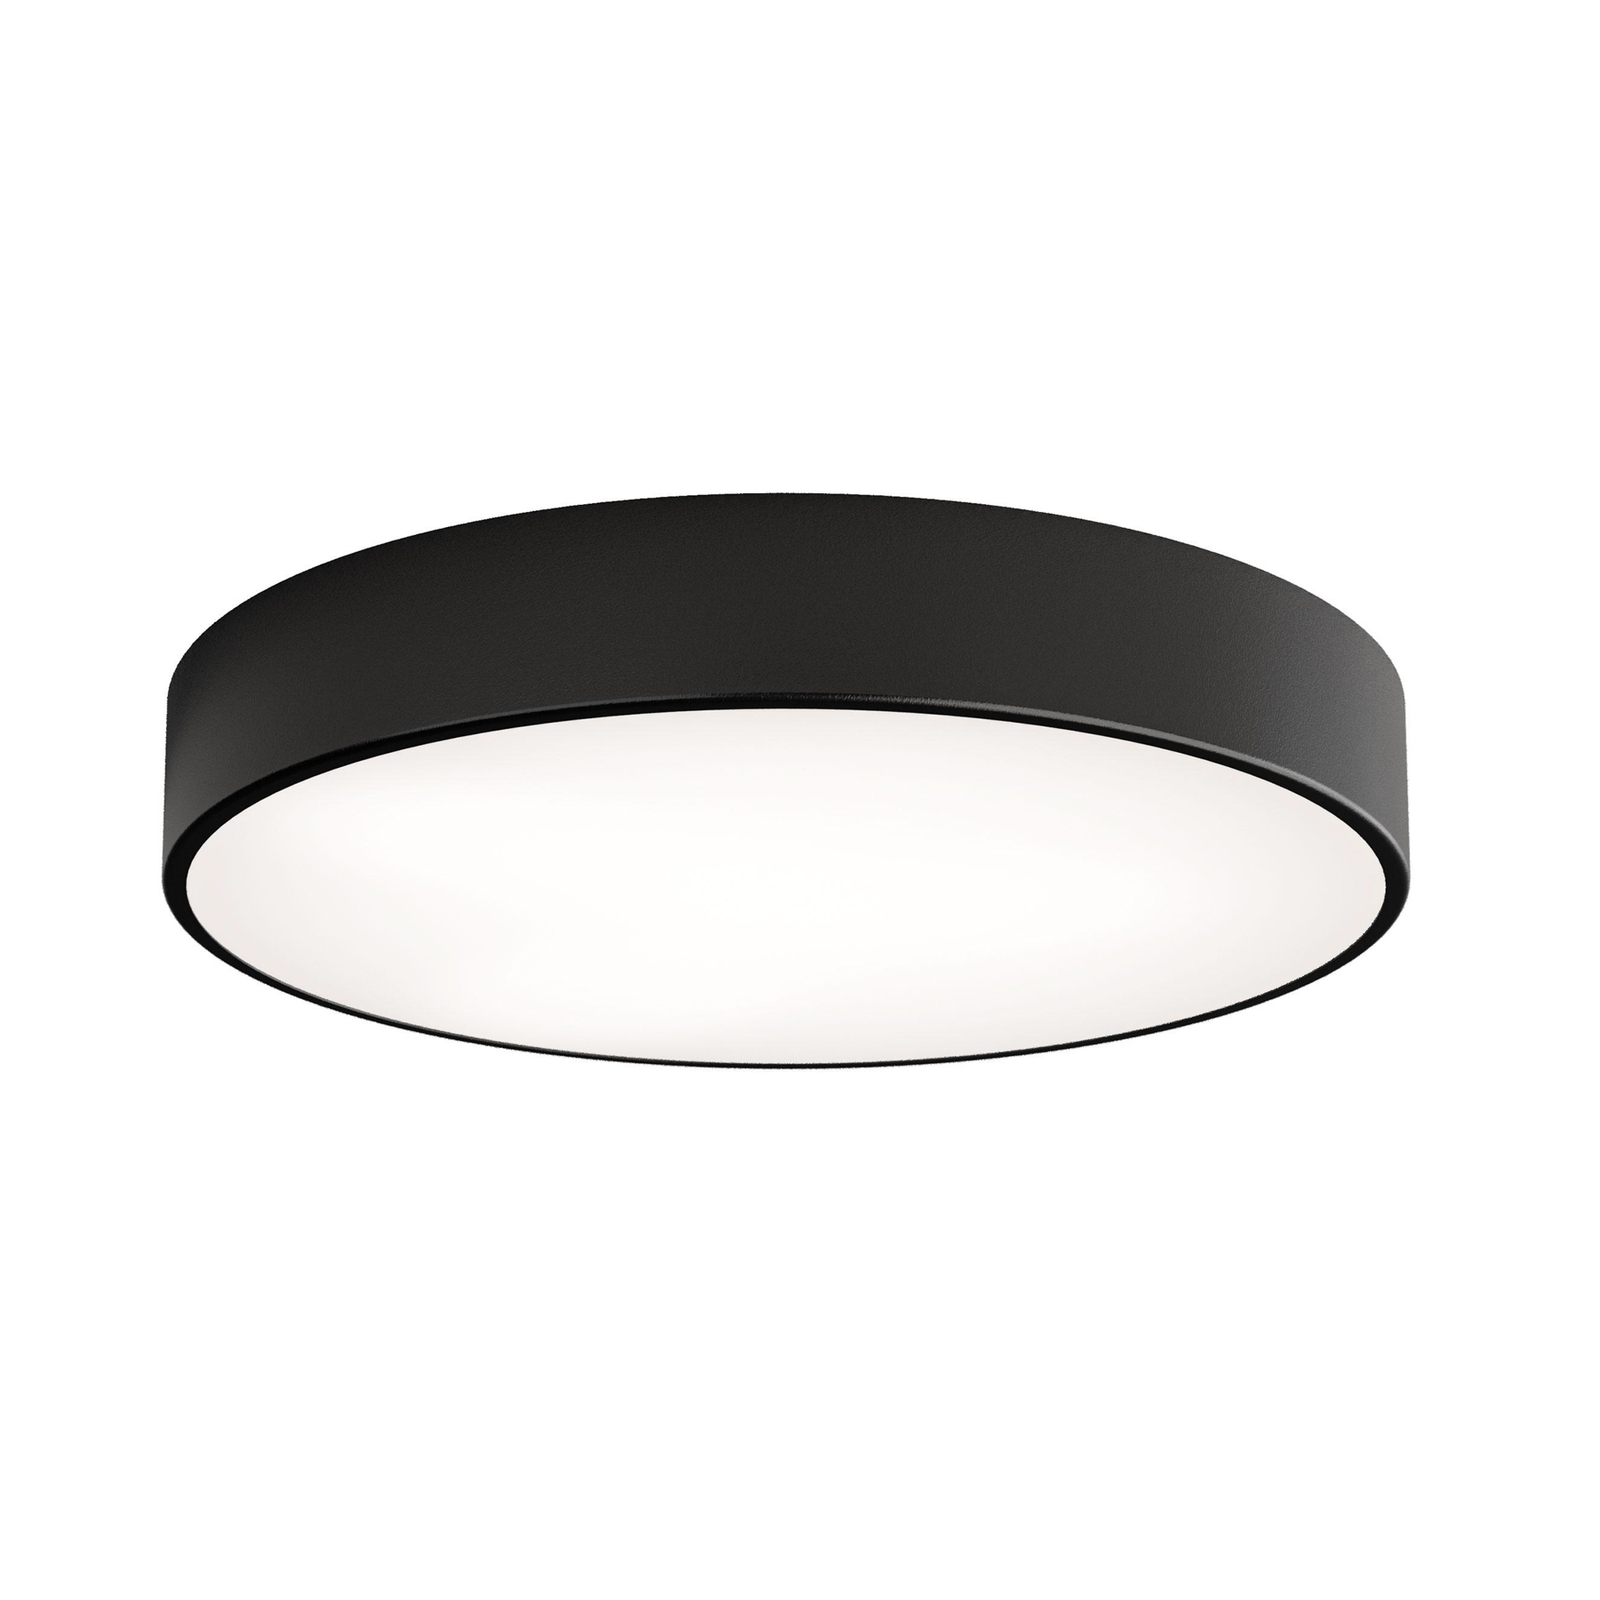 Cleo plafondlamp, zwart, Ø 50 cm, metaal, IP54